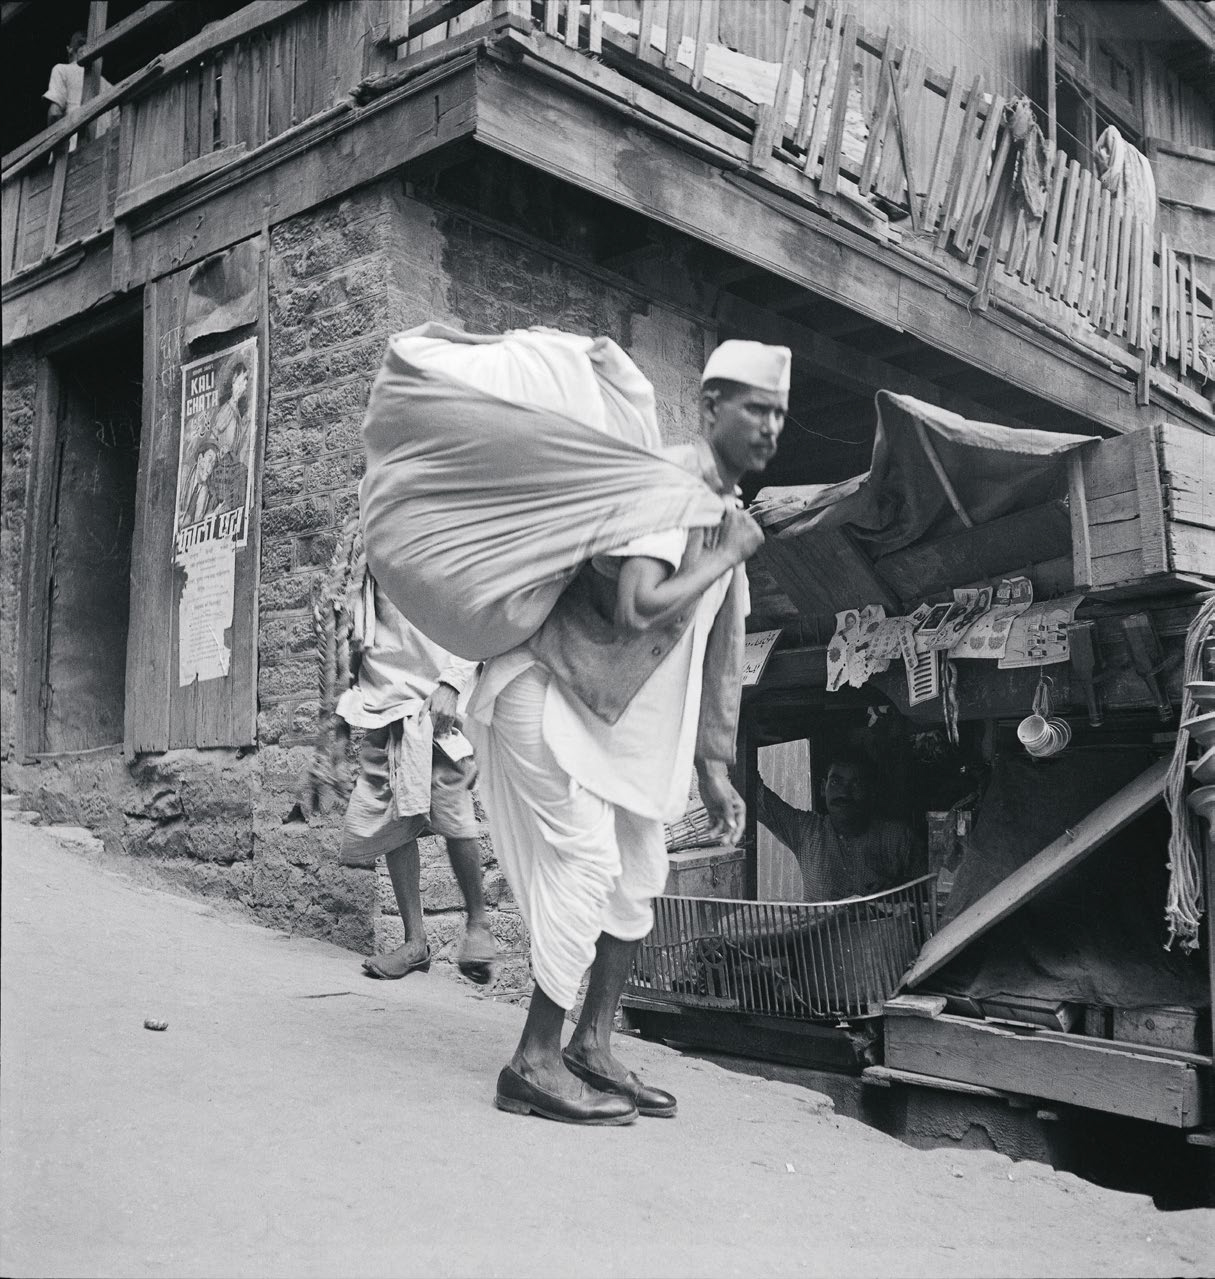 منطقة شيملا، رجل يحمل قماشاً يُستخدم في صناعة الحقائب.